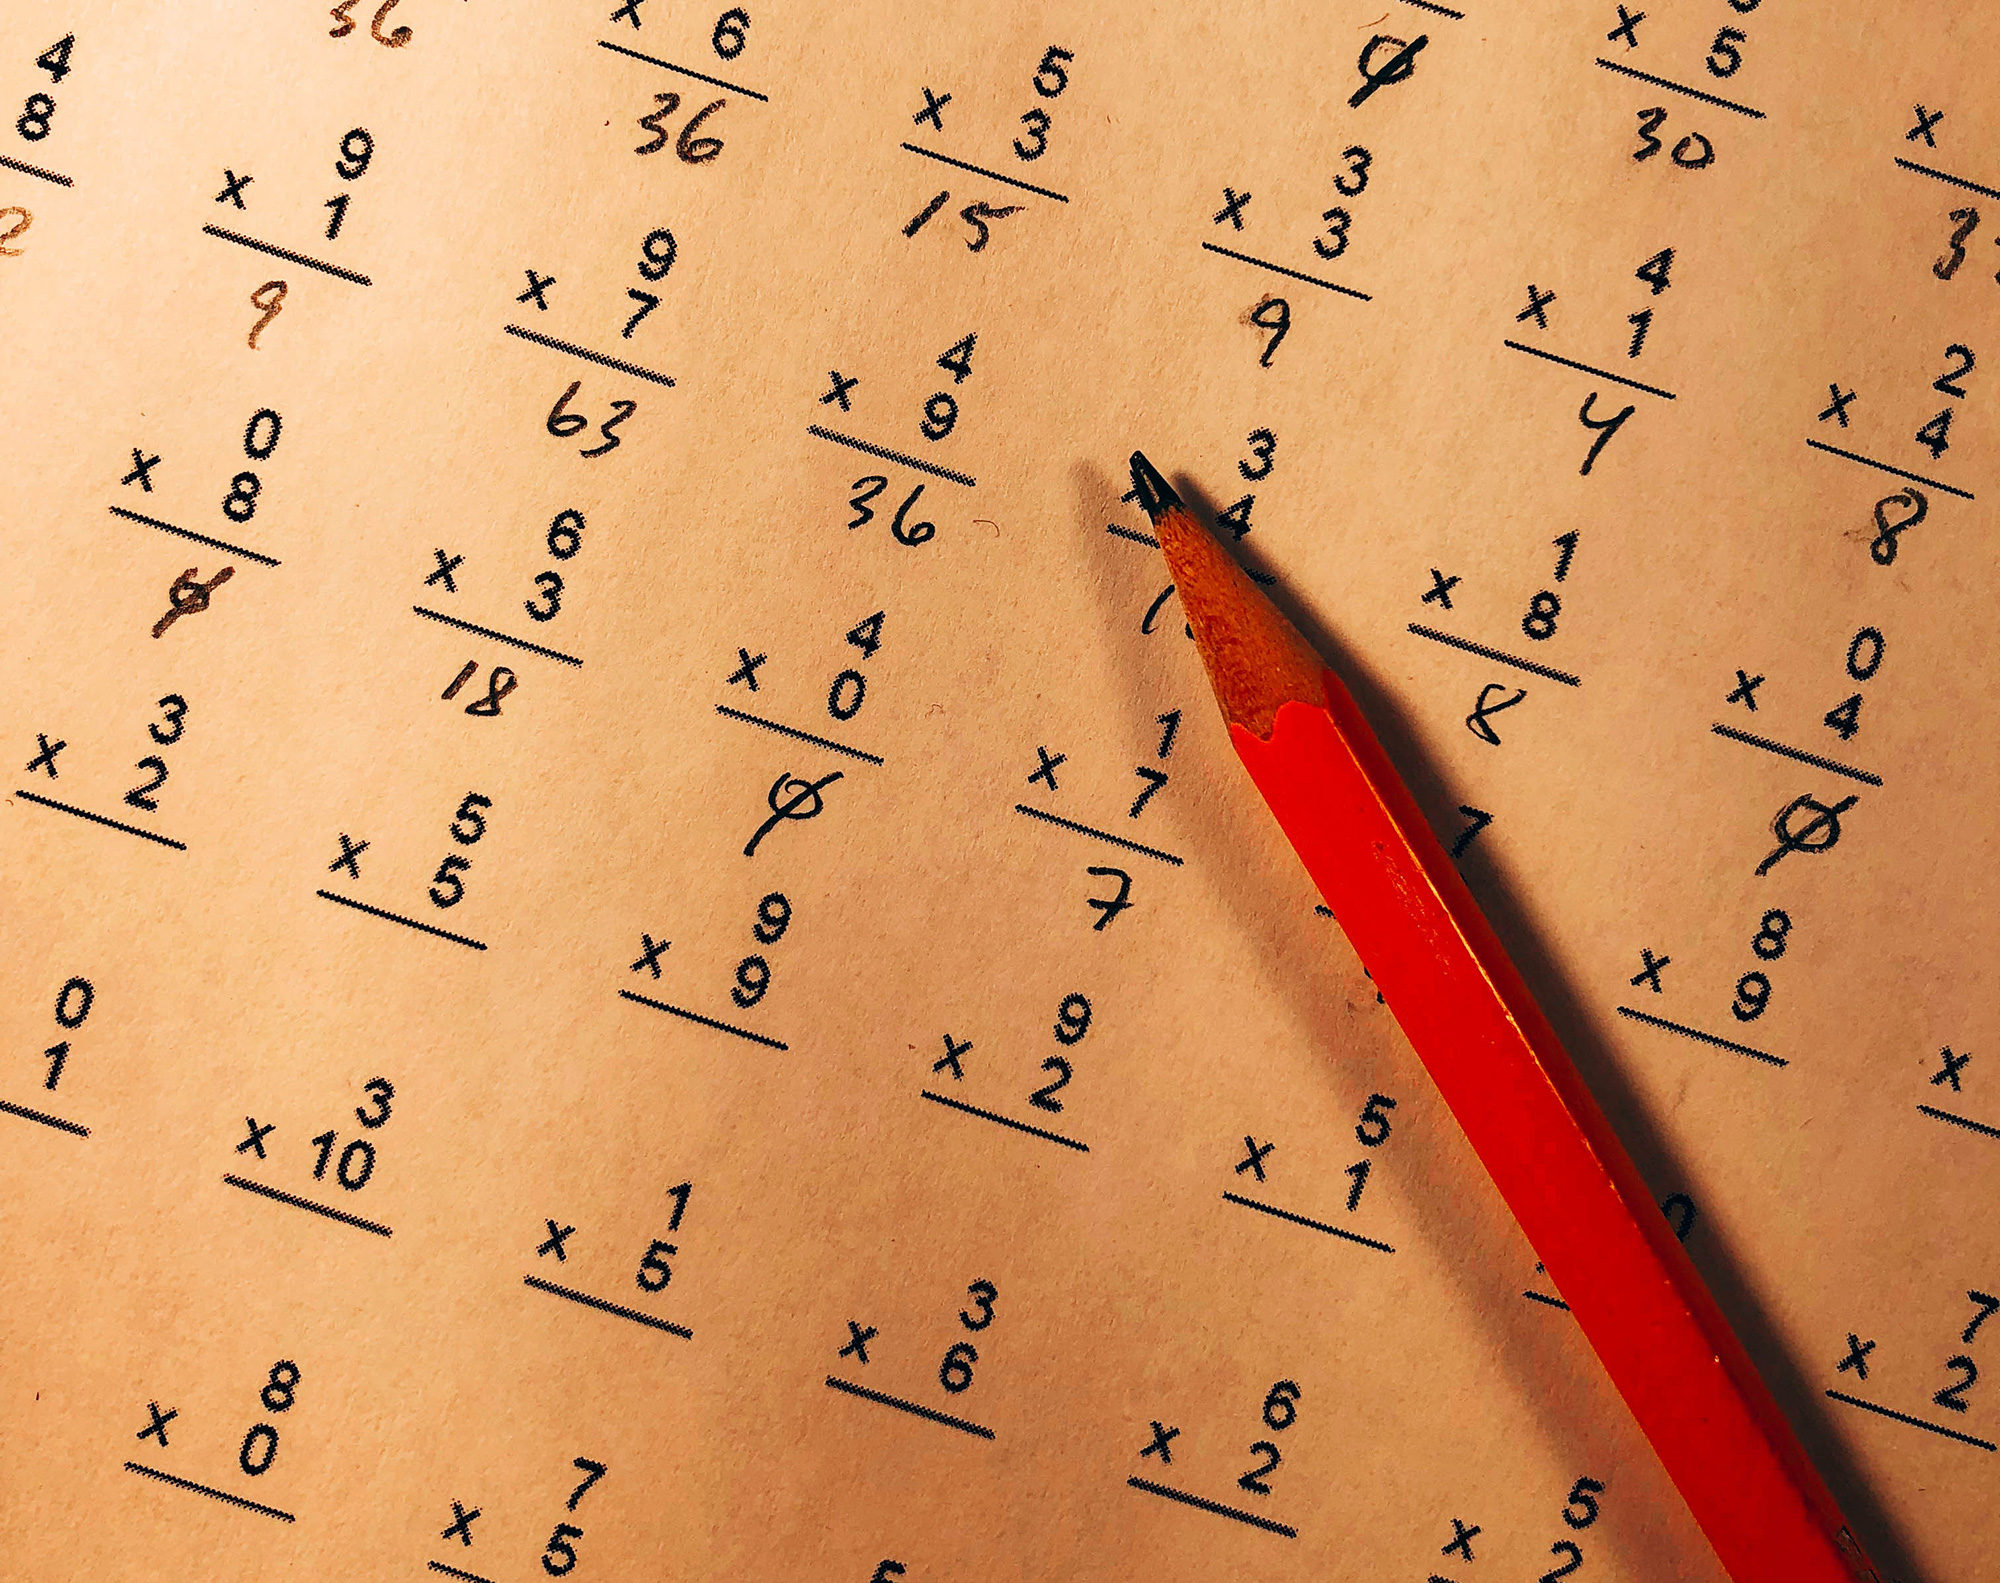 Apprendre les tables de multiplication - Dyslexie - Dyscalculie